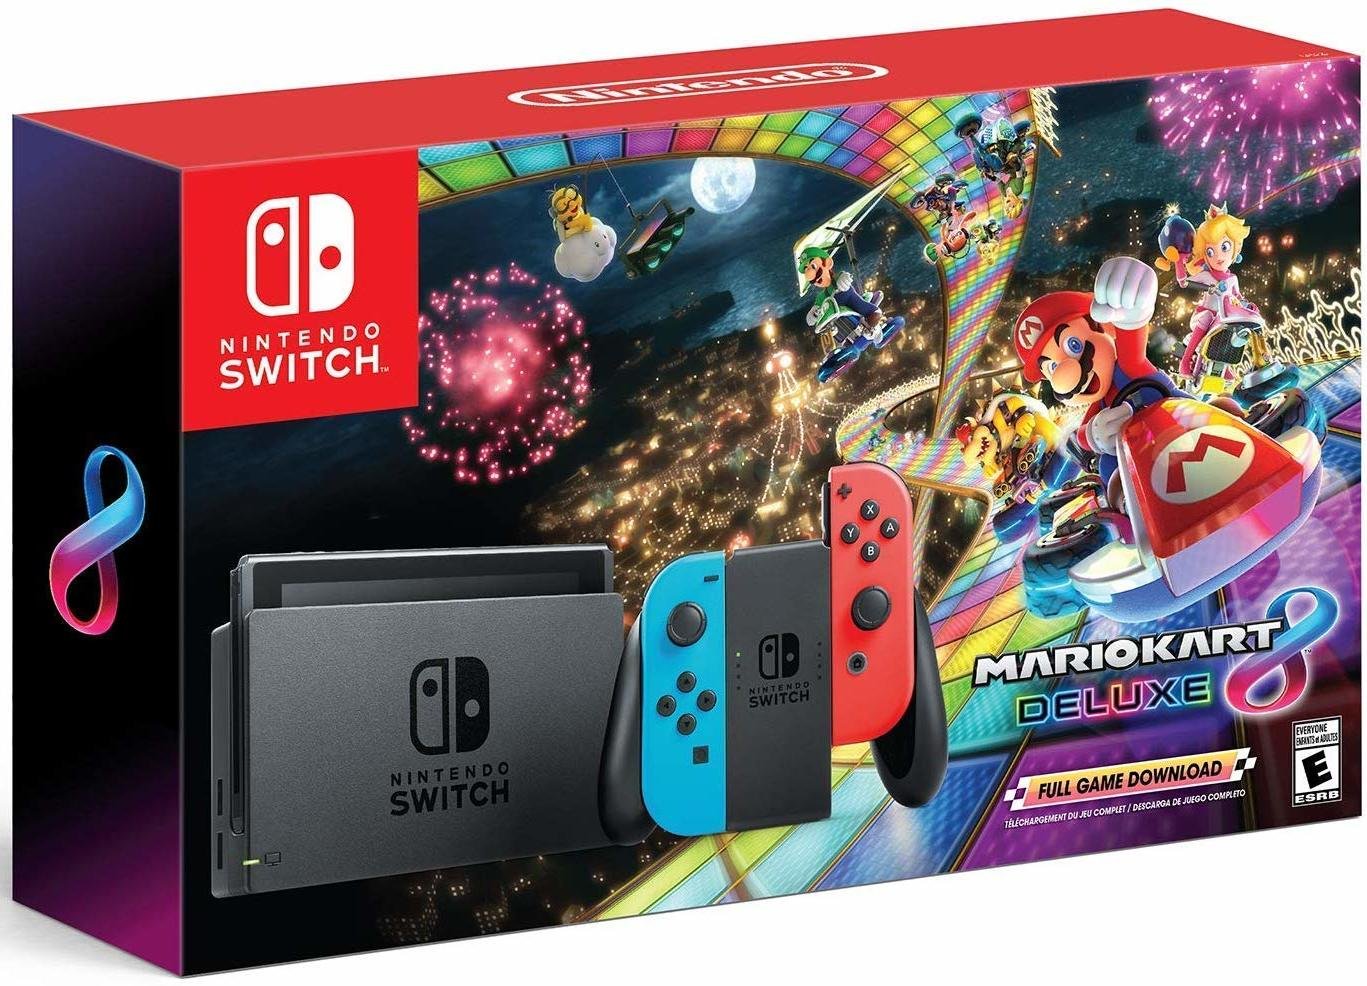 Consola Nintendo Switch + Mario Kart 8 Deluxe (Juego Descargable) - Neón Rojo/Azul